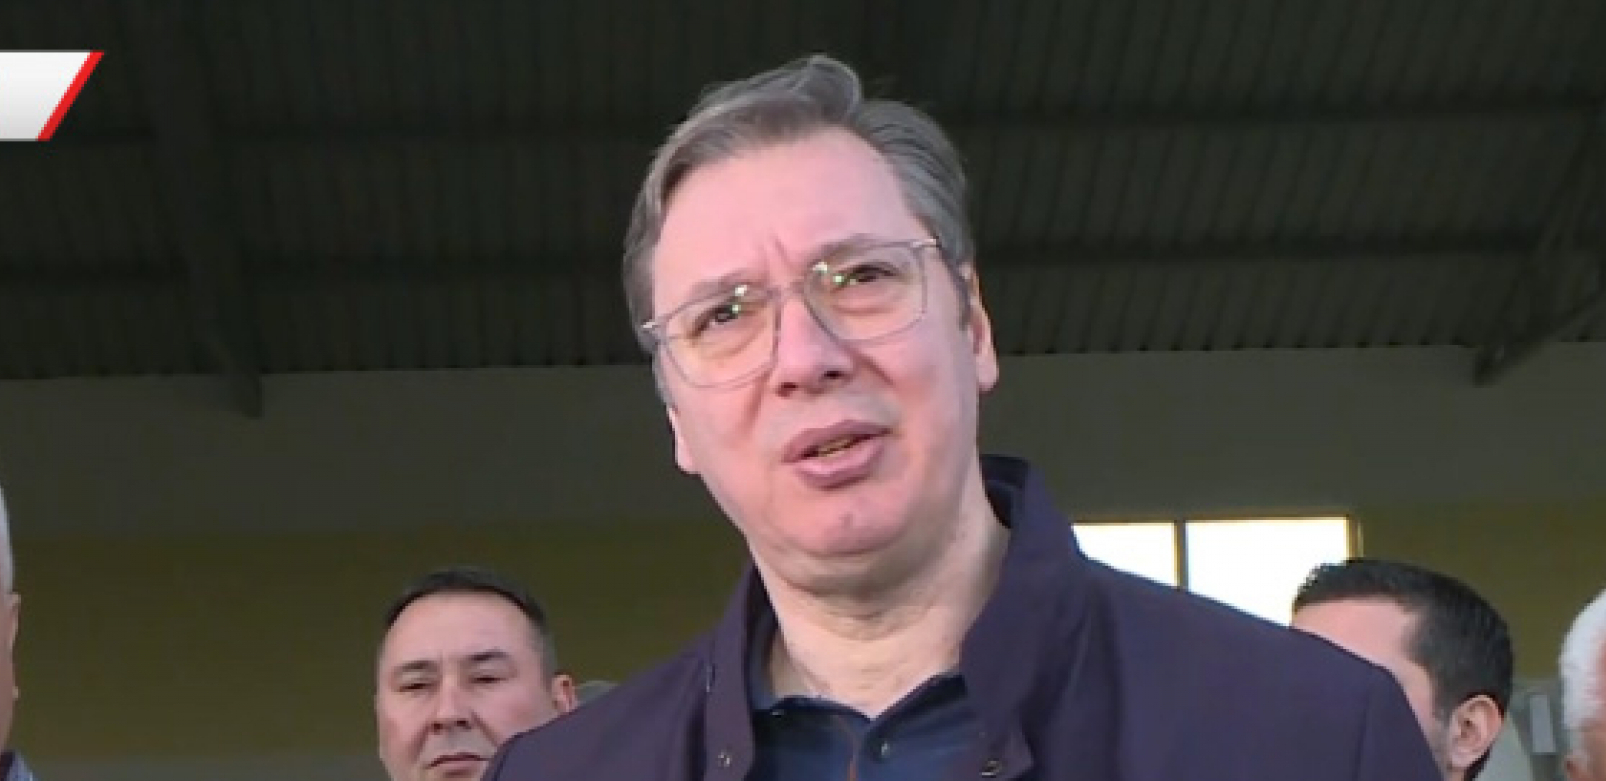 "PLAŠIM SE IDEMO U PRAVCU NAJVEĆEG SUKOBA U ISTORIJI" Vučić reagovao na vest o nalogu Haga za hapšenje Putina